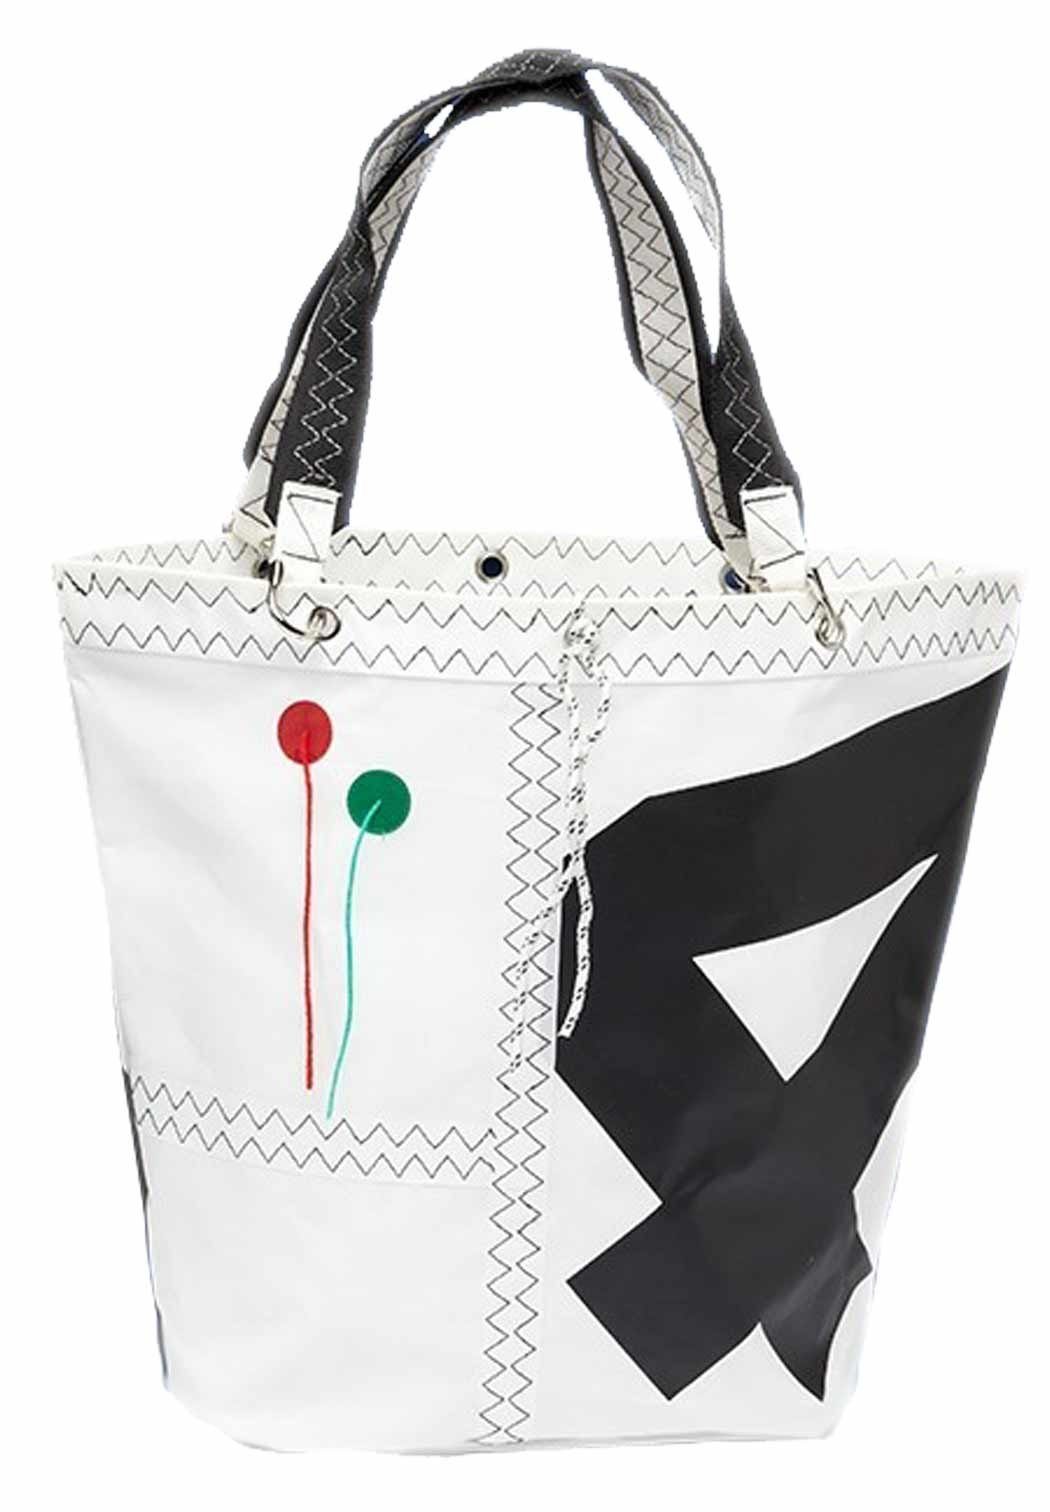 Trend Marine Einkaufsshopper Sea Girl Einkaufstasche, Weiß / Schwarz aus Segeltuch, Shopping Bag